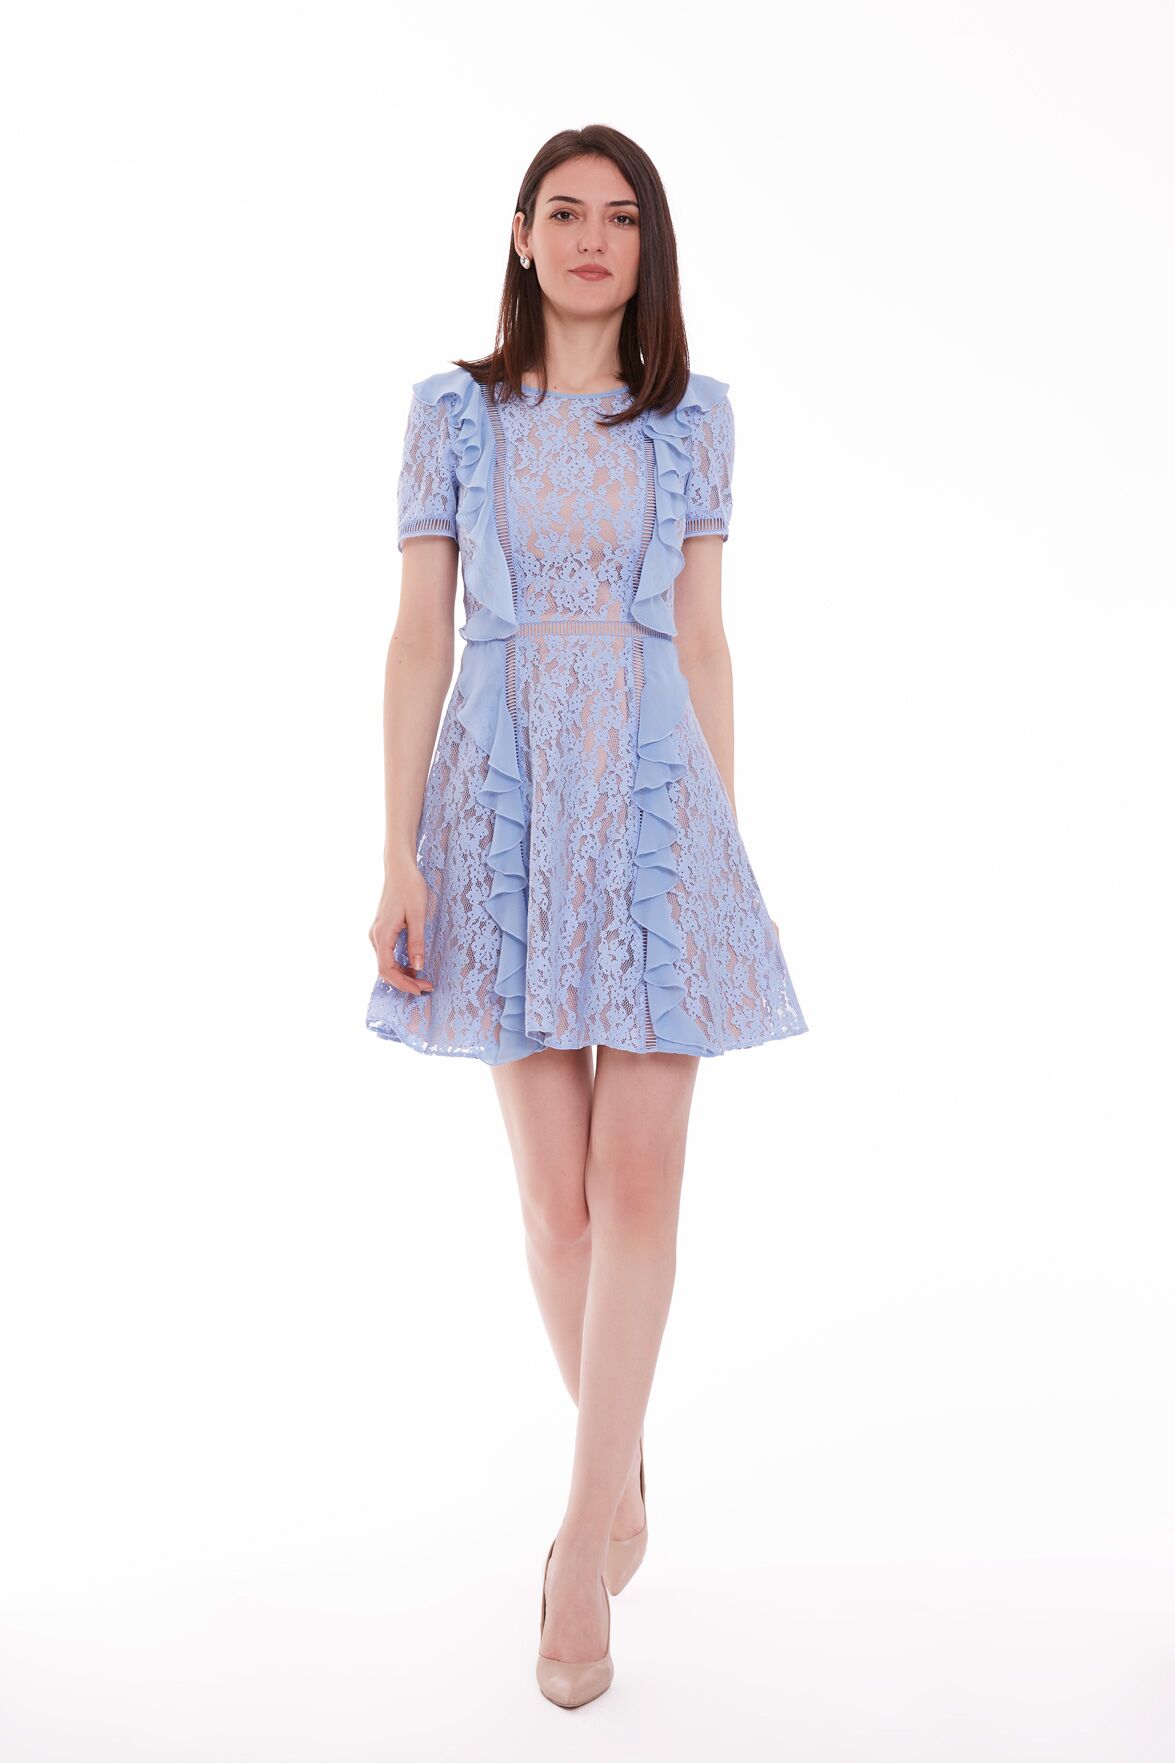 KIWE - Lace Chiffon Garnish Blue Dress